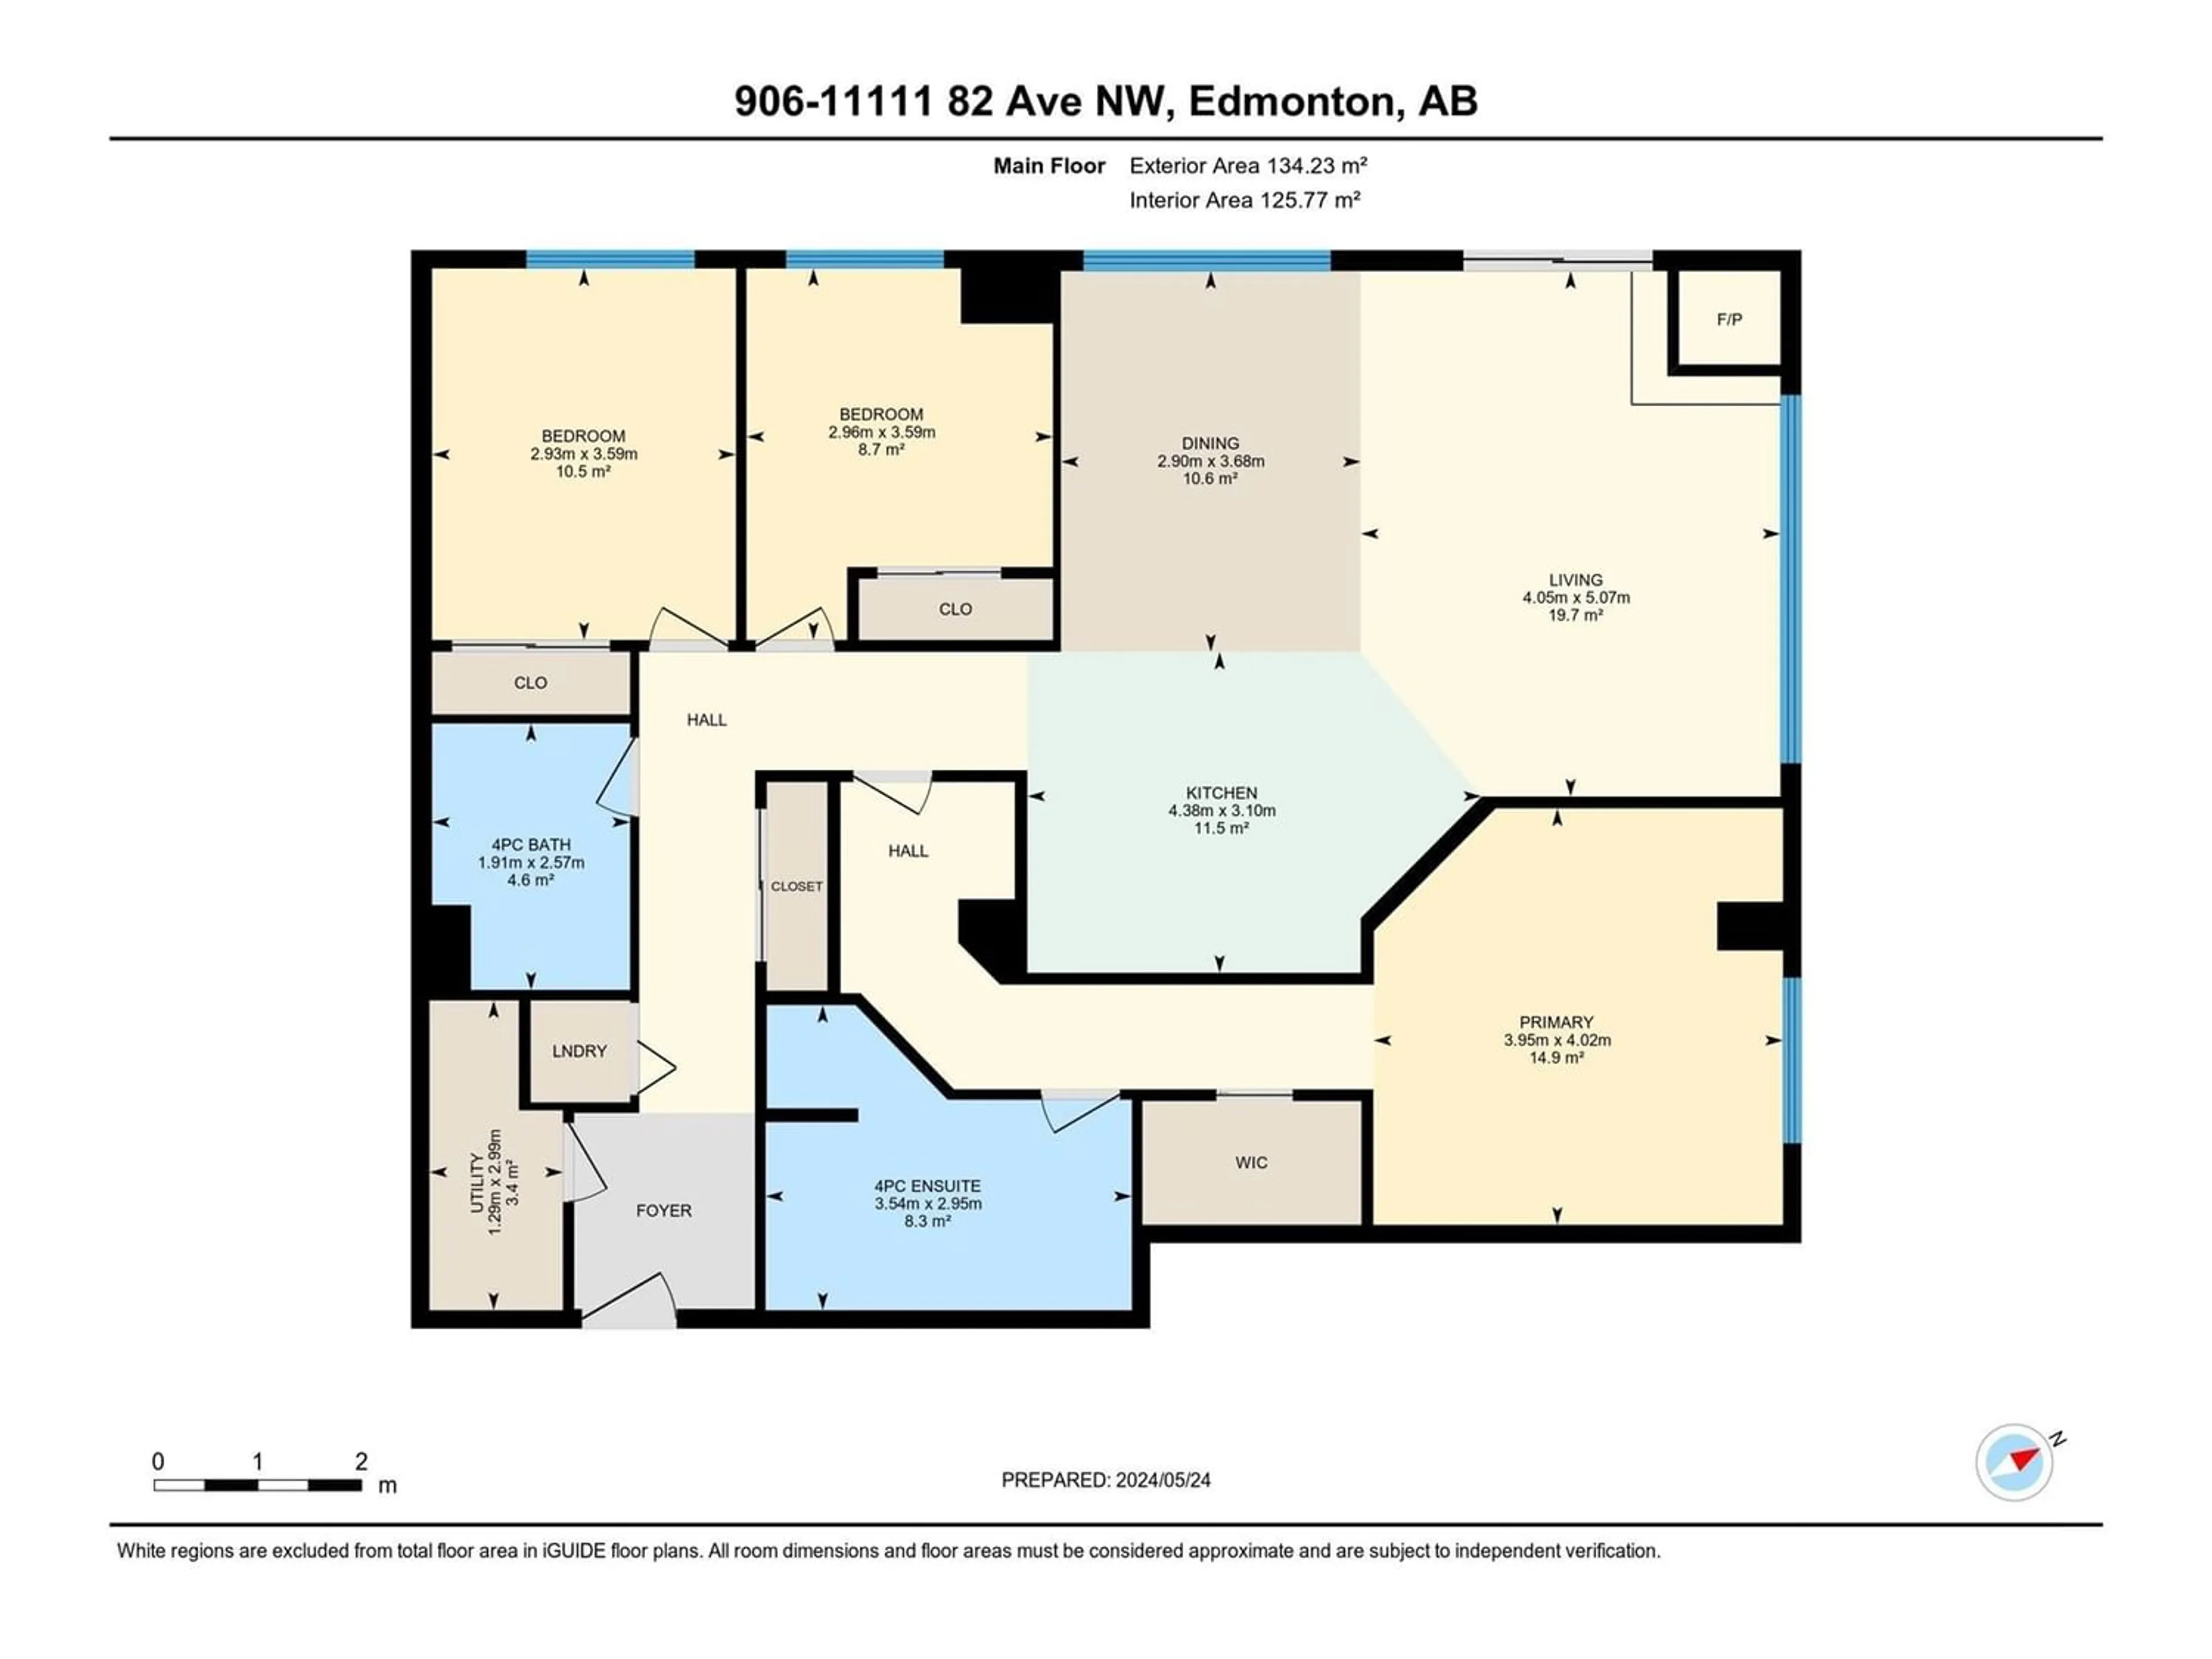 Floor plan for #906 11111 82 AV NW NW, Edmonton Alberta T6G0T3